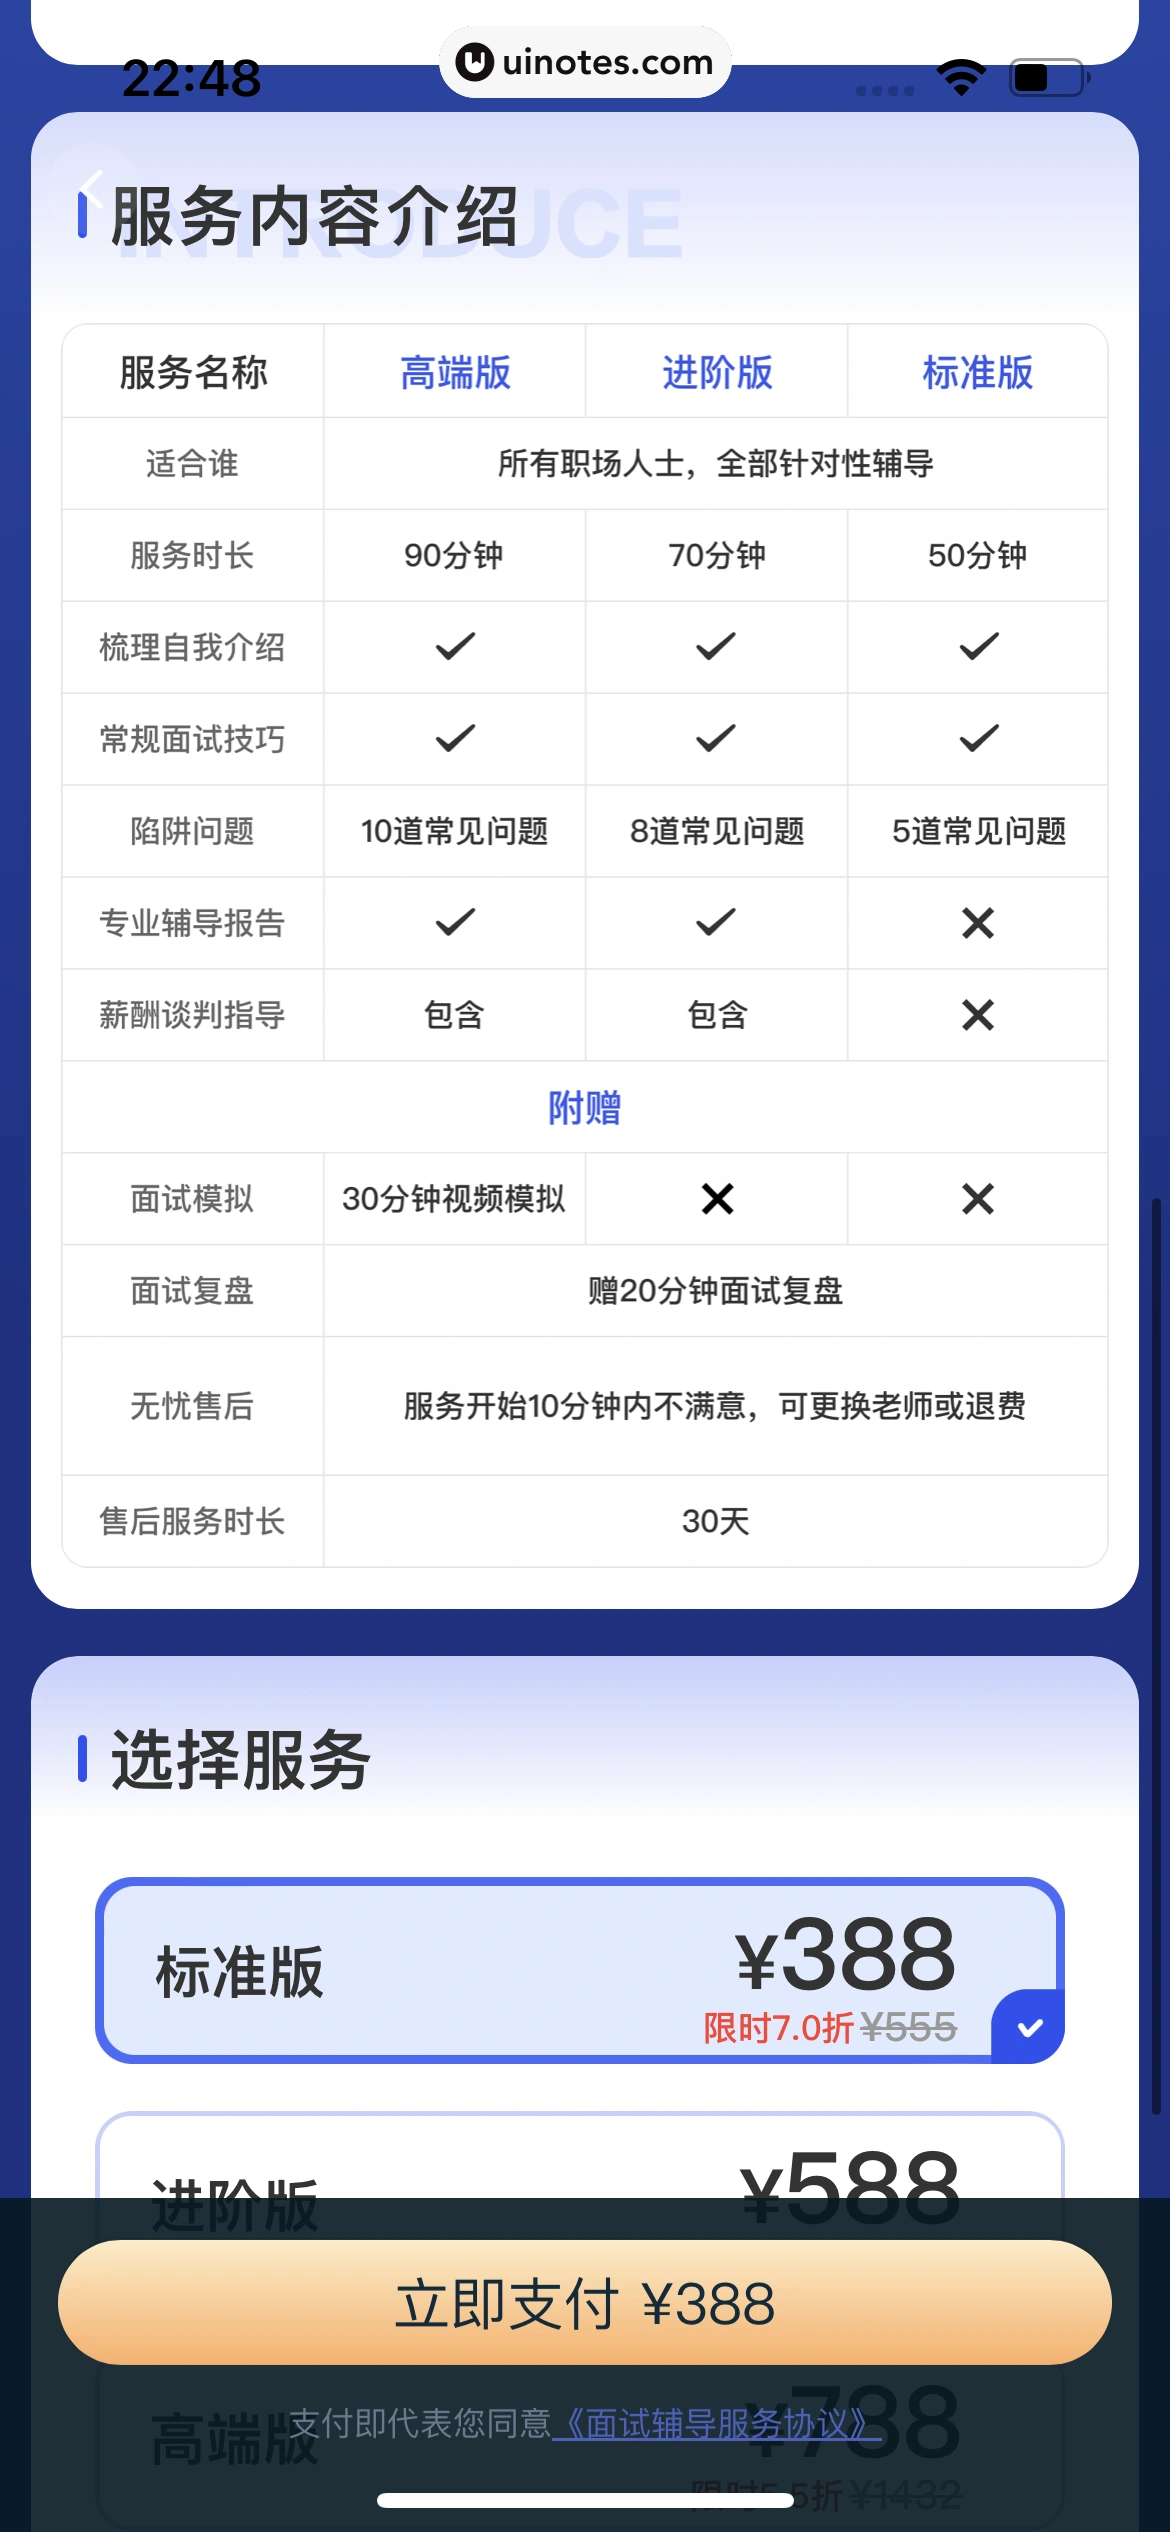 智联招聘 App 截图 306 - UI Notes